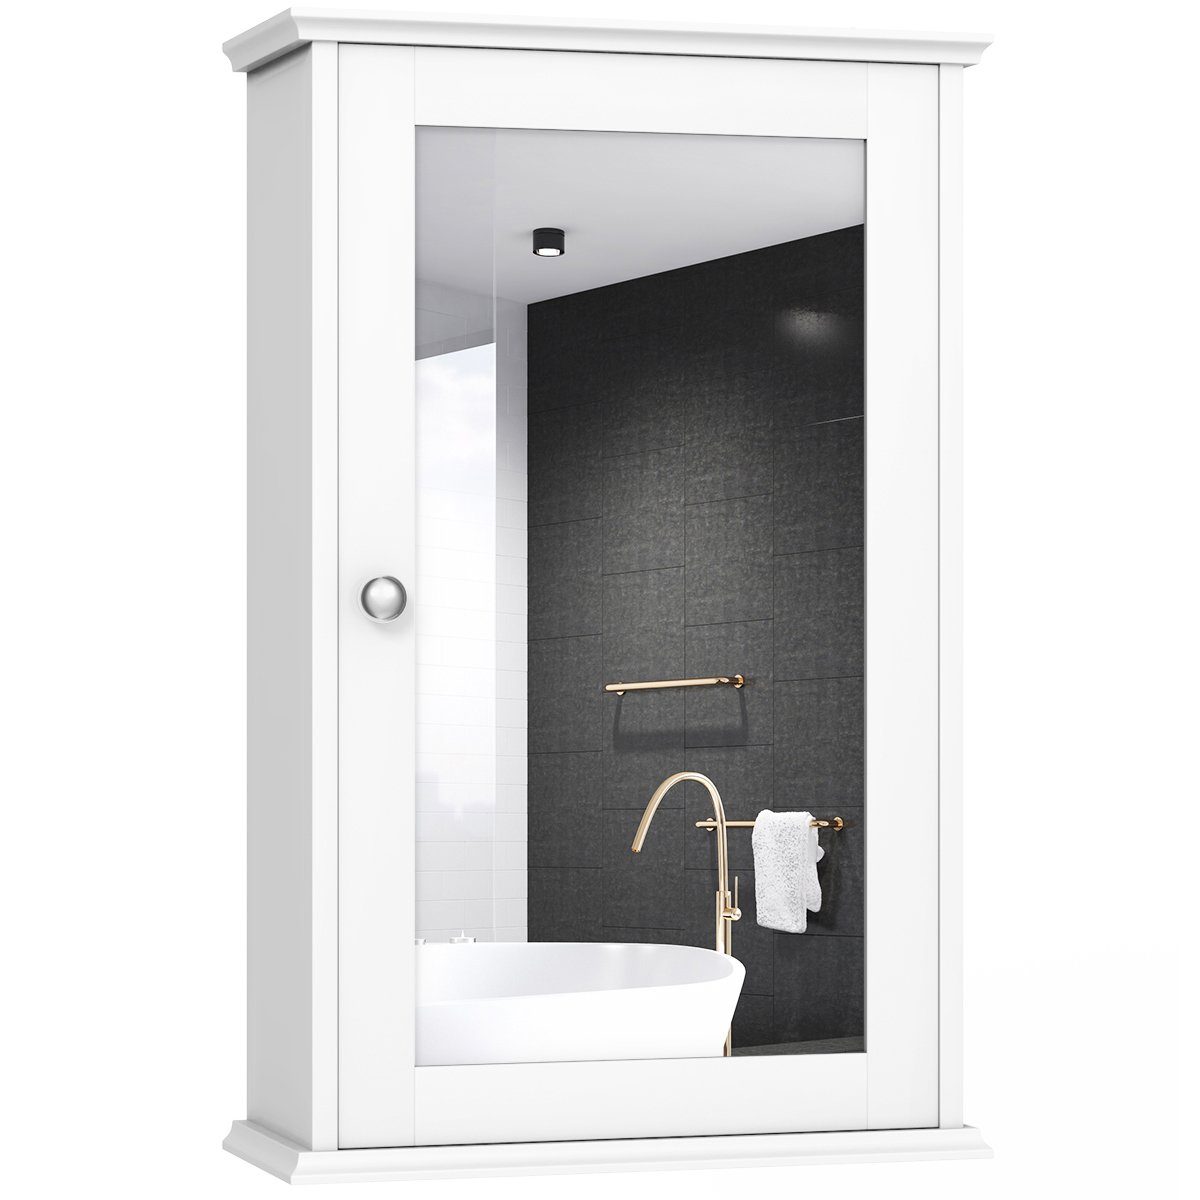 COSTWAY Spiegelschrank Bad, mit Tür & Ablage, Holz, 34x15x53cm, weiß